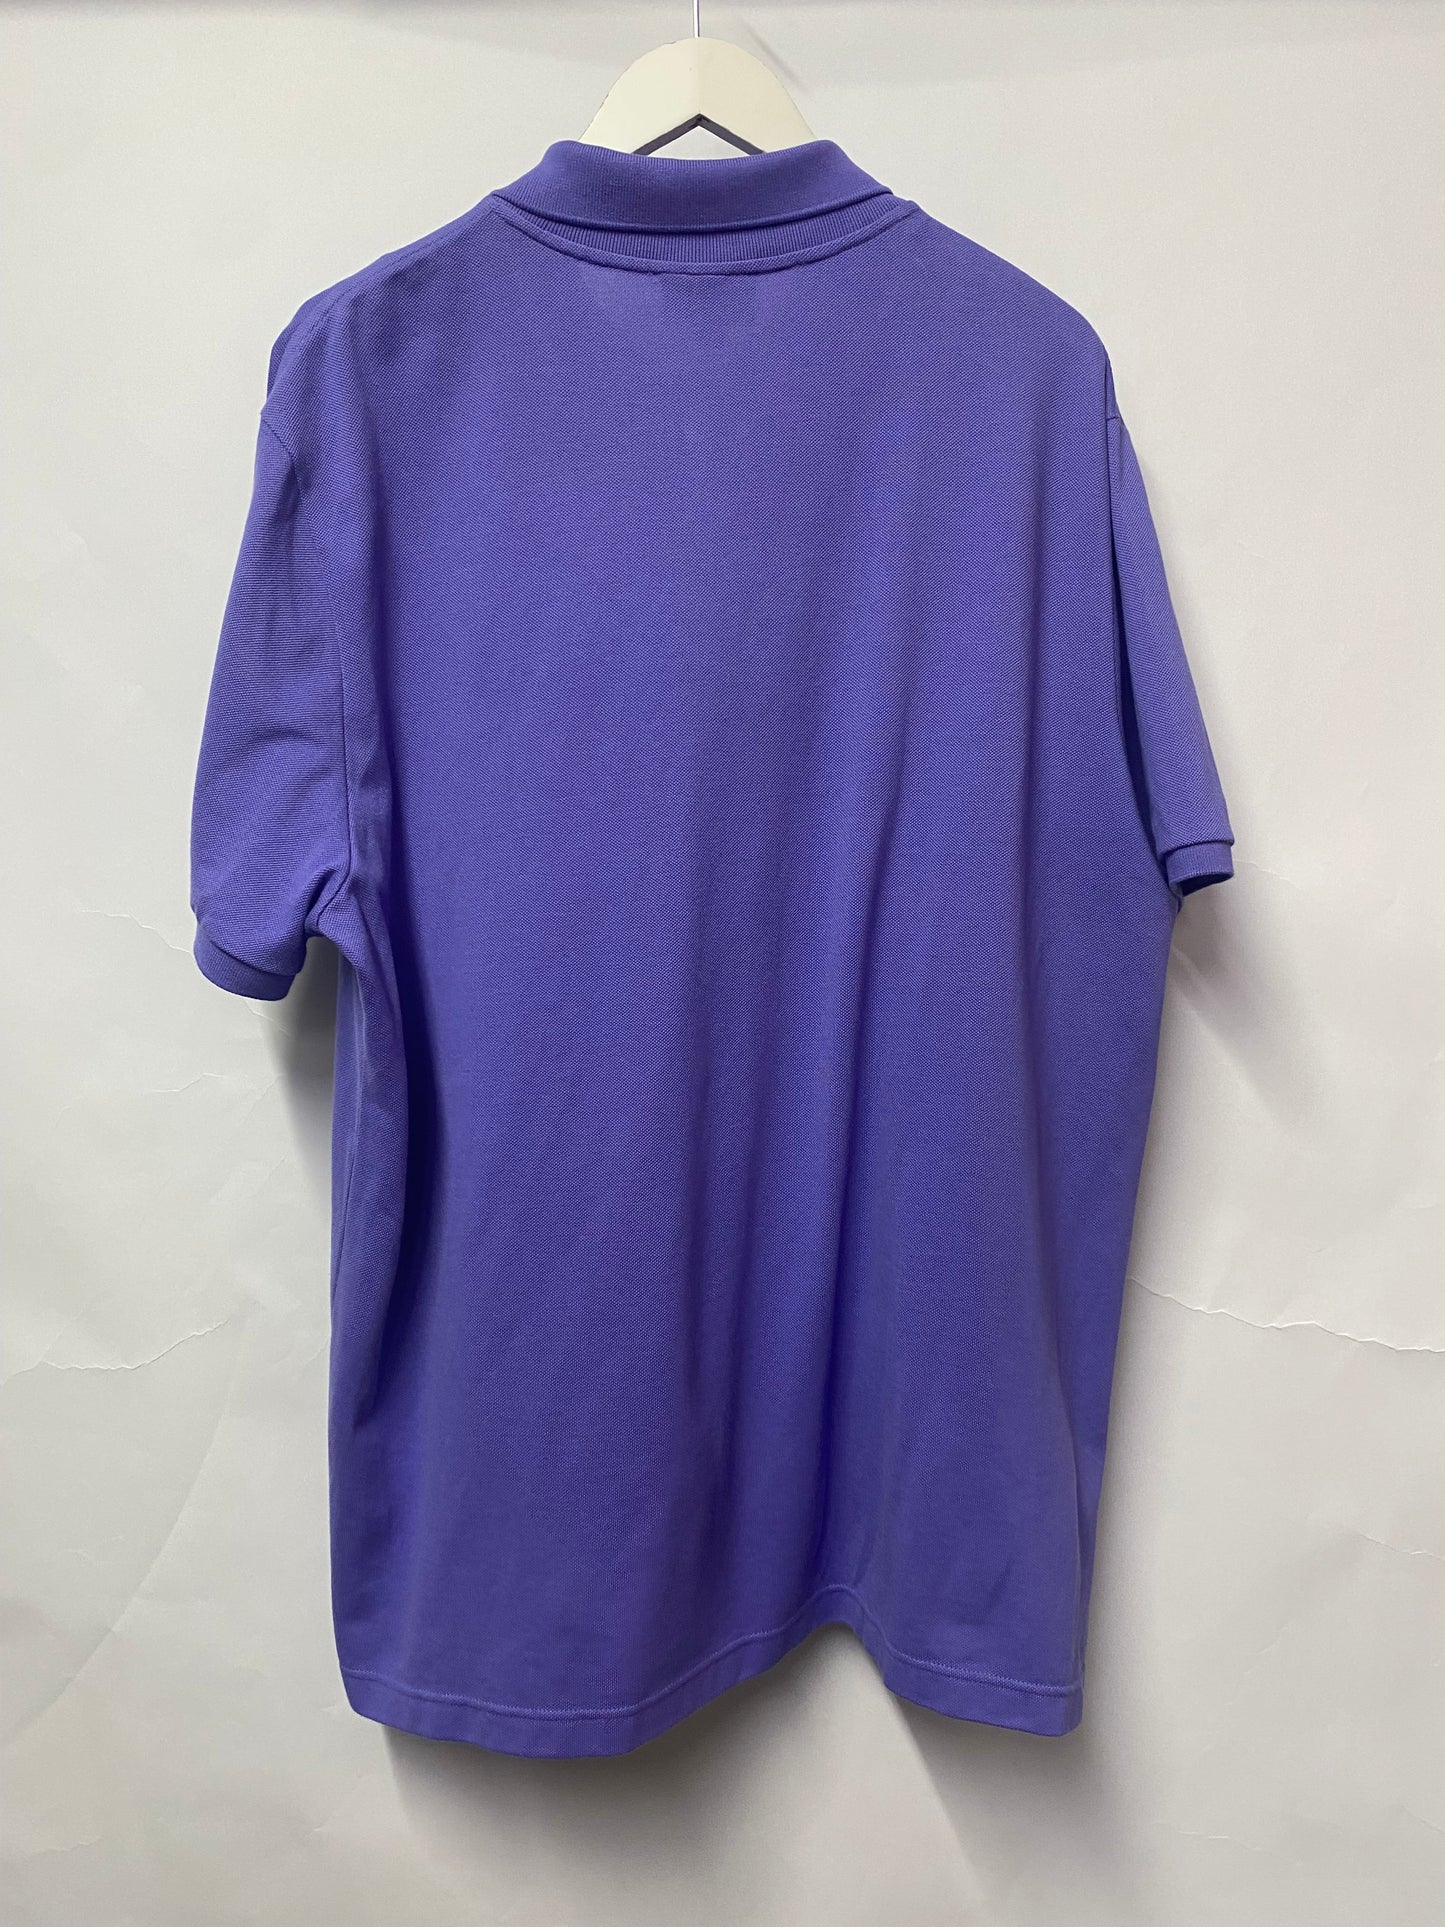 Lacoste Purple Slim Fit Polo Shirt BNWT